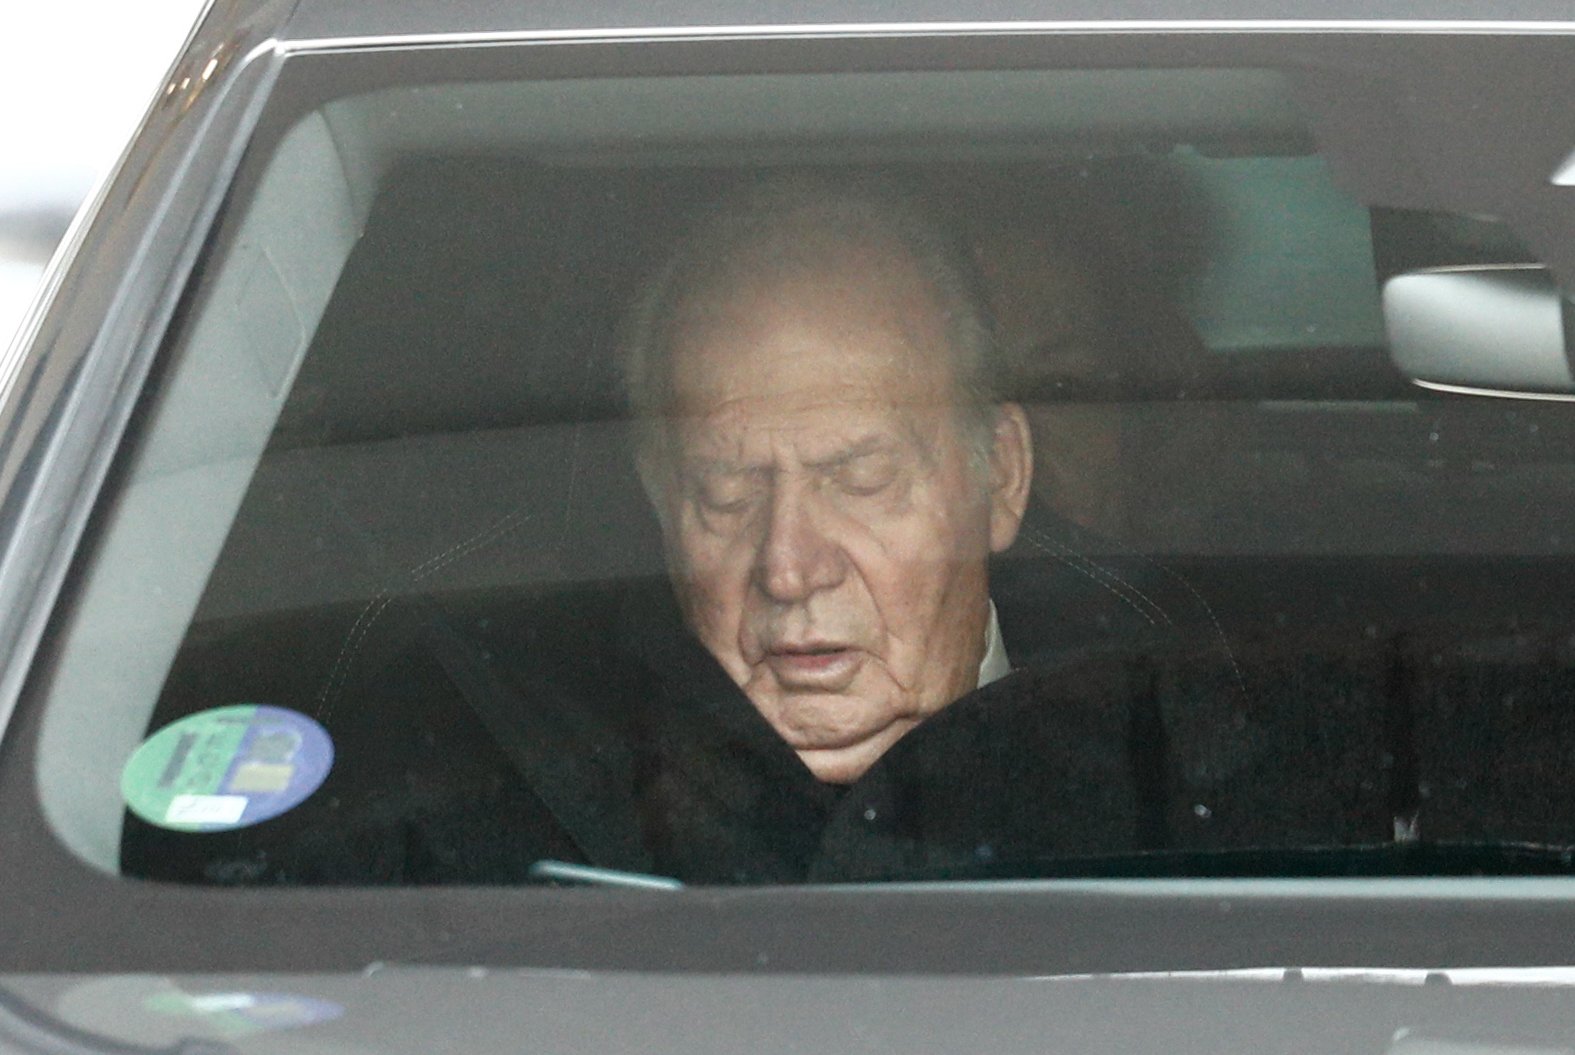 FOTOS Juan Carlos enfermizamente delgado, hundido: "Ve cómo se acerca el final"